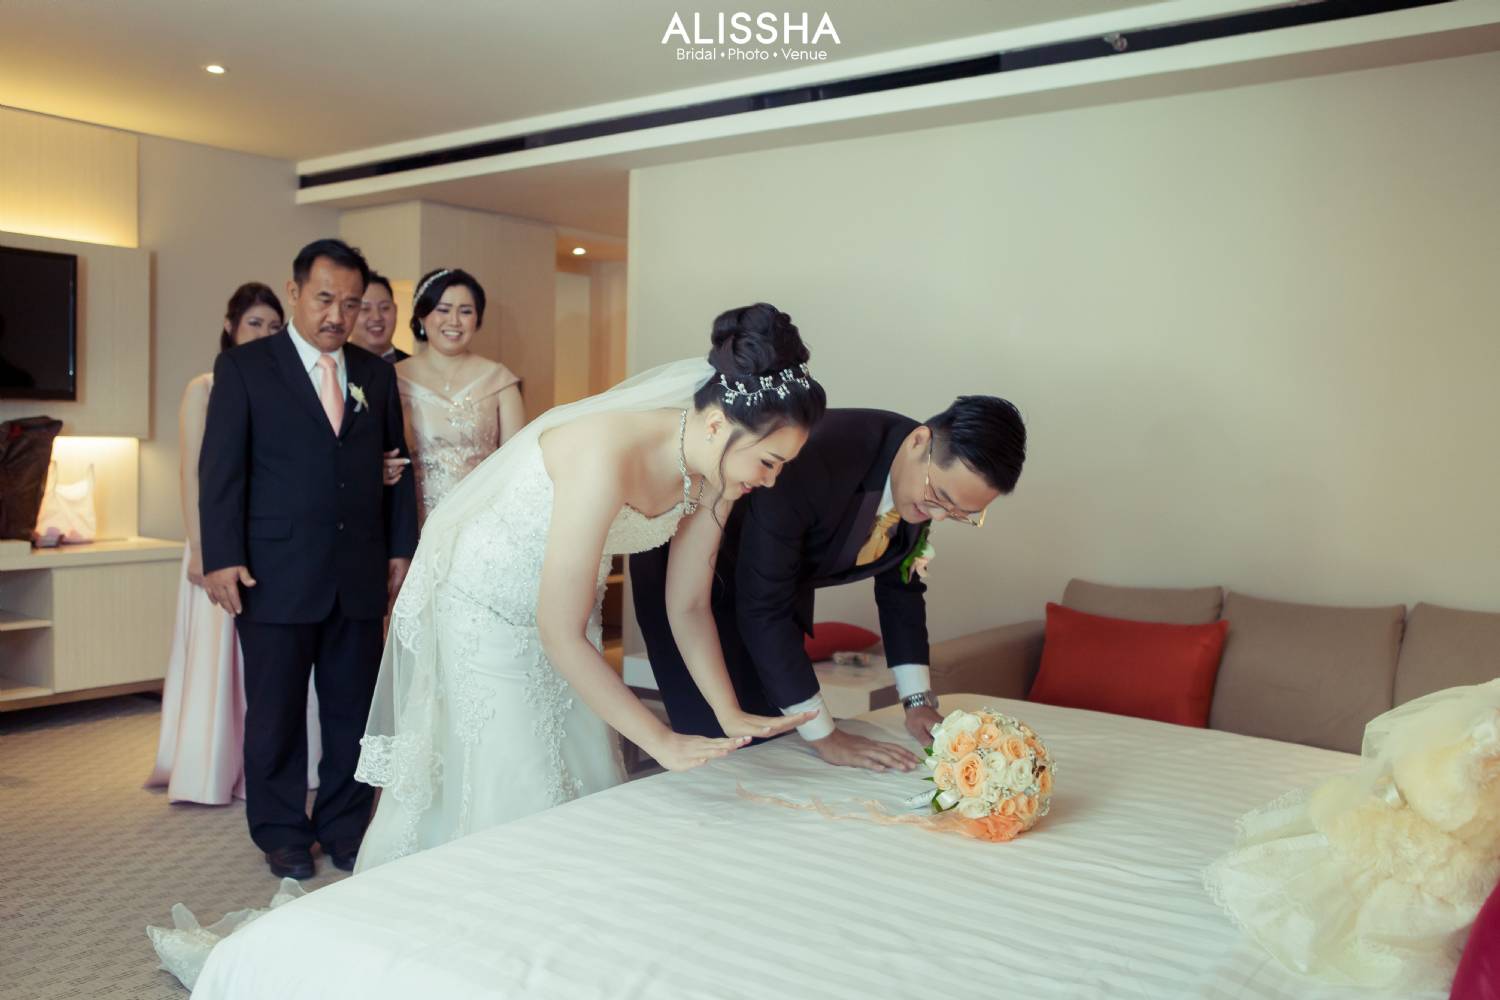 Wedding Day Alessia & Andri 29-09-2019 14